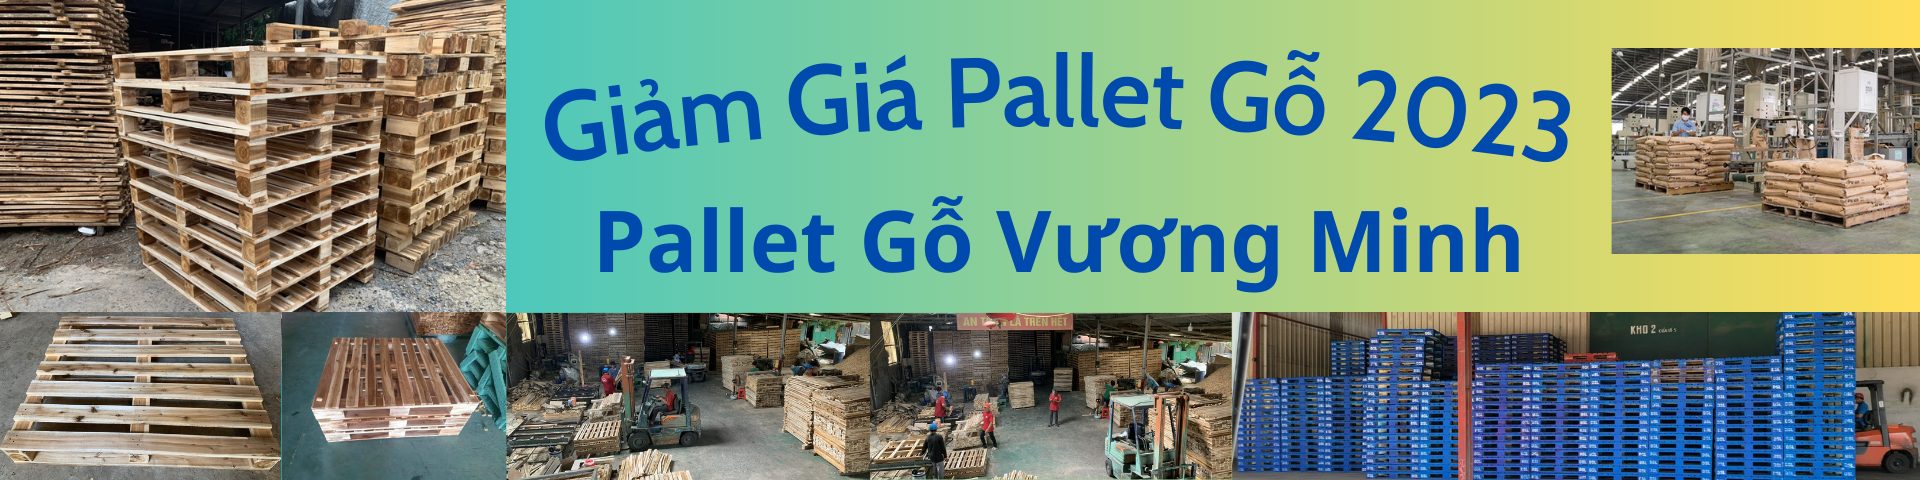 Pallet gỗ 1000x1200 - 3 chân cặp M2026523 - Giảm Giá Bán Pallet Gỗ 2023